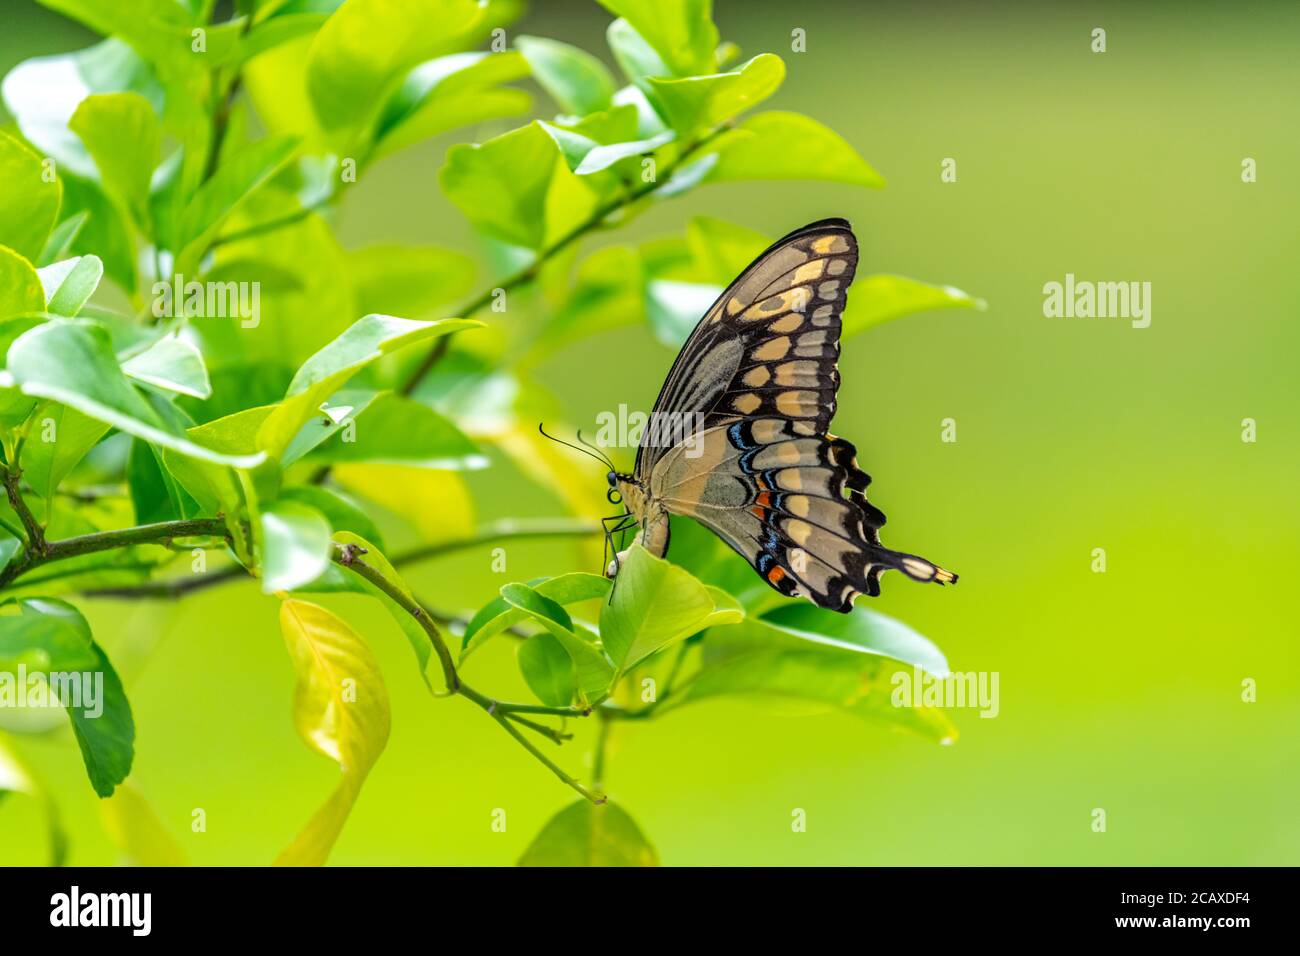 Una hembra gigante oriental de la cola de cisnes (Papilio cresphontes) poniendo un huevo (sólo visible) en un limonero. Foto de stock